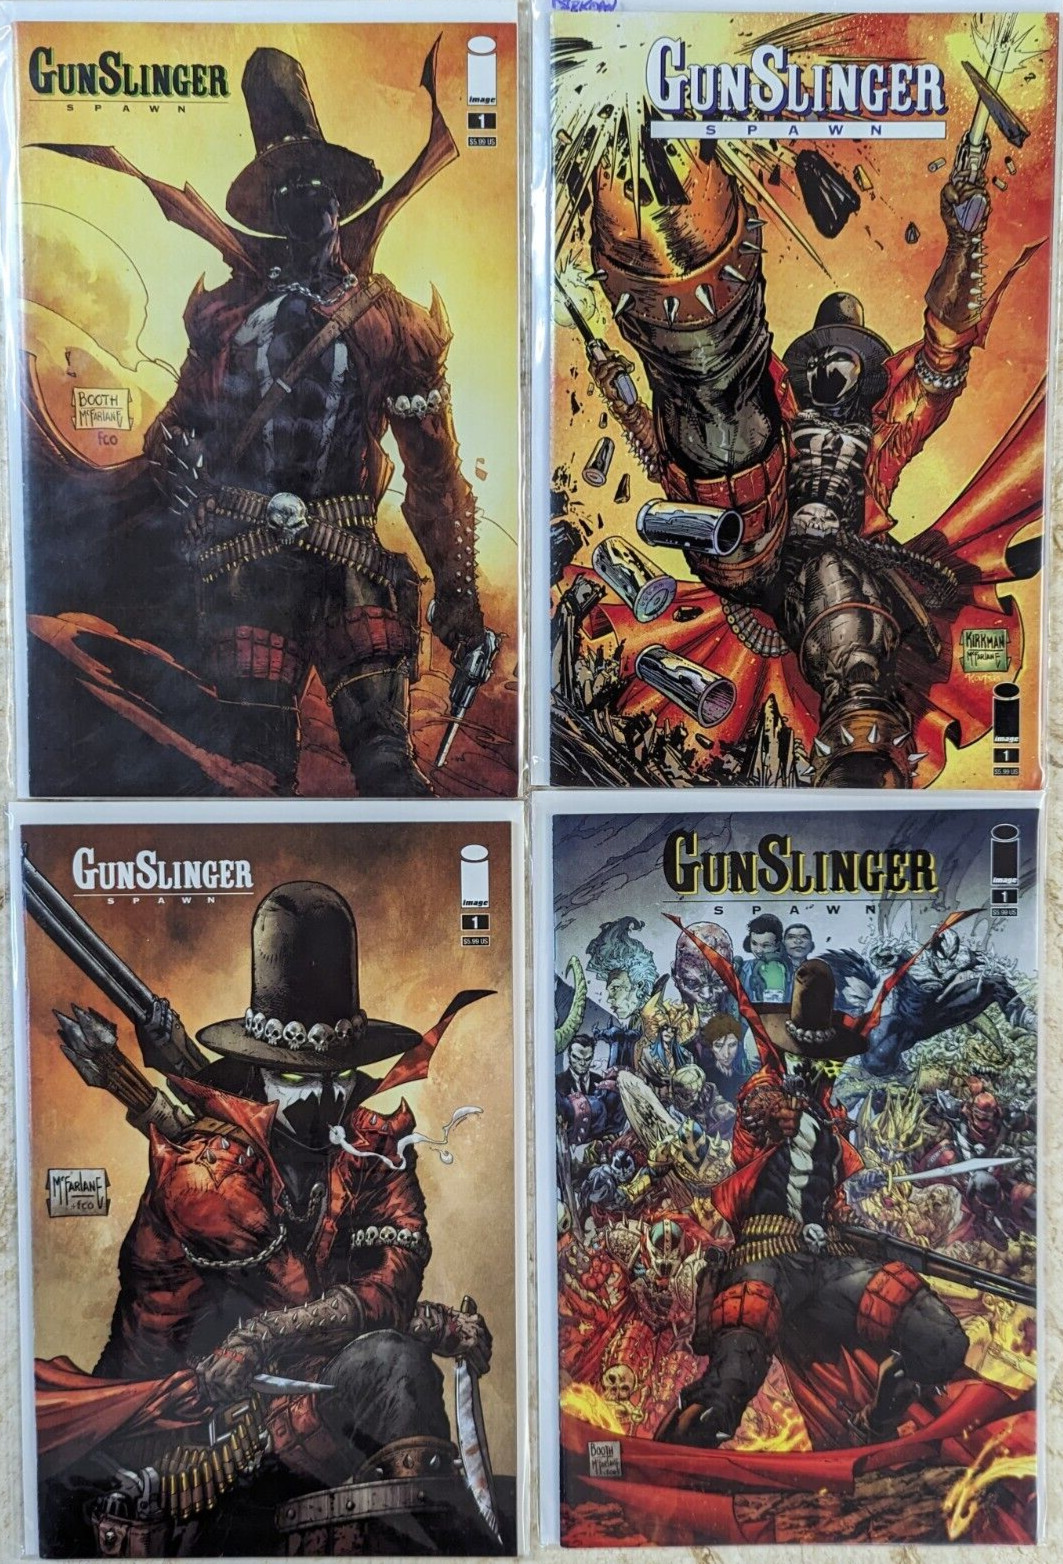 Lot of 4 Comic Books - Gunslinger Spawn